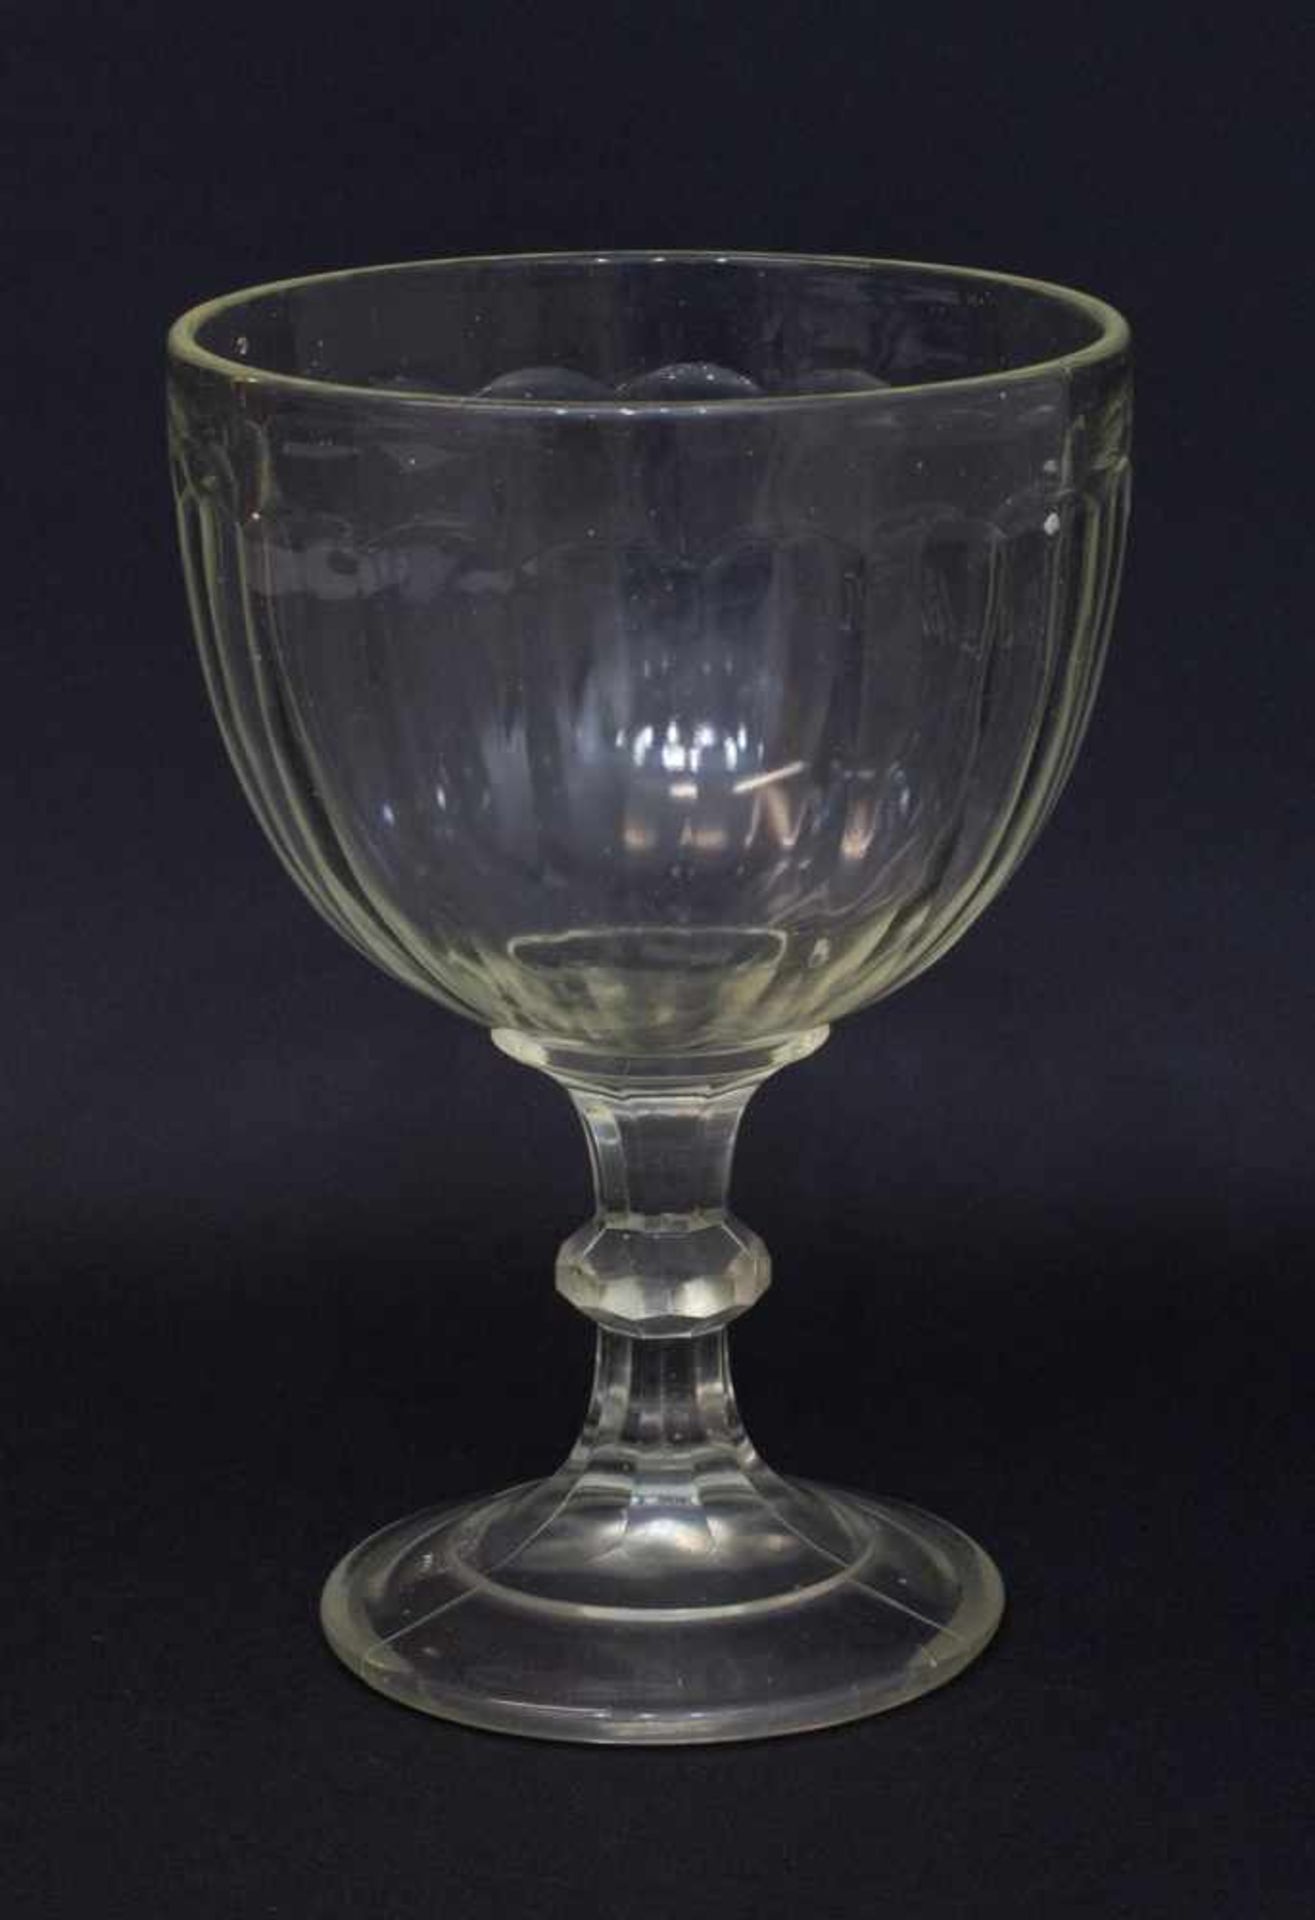 Berliner Weiße Glas um 1900, Preßglas mit facettierter Wandung, 0,3 Liter Eichmaß, H. 20 cm